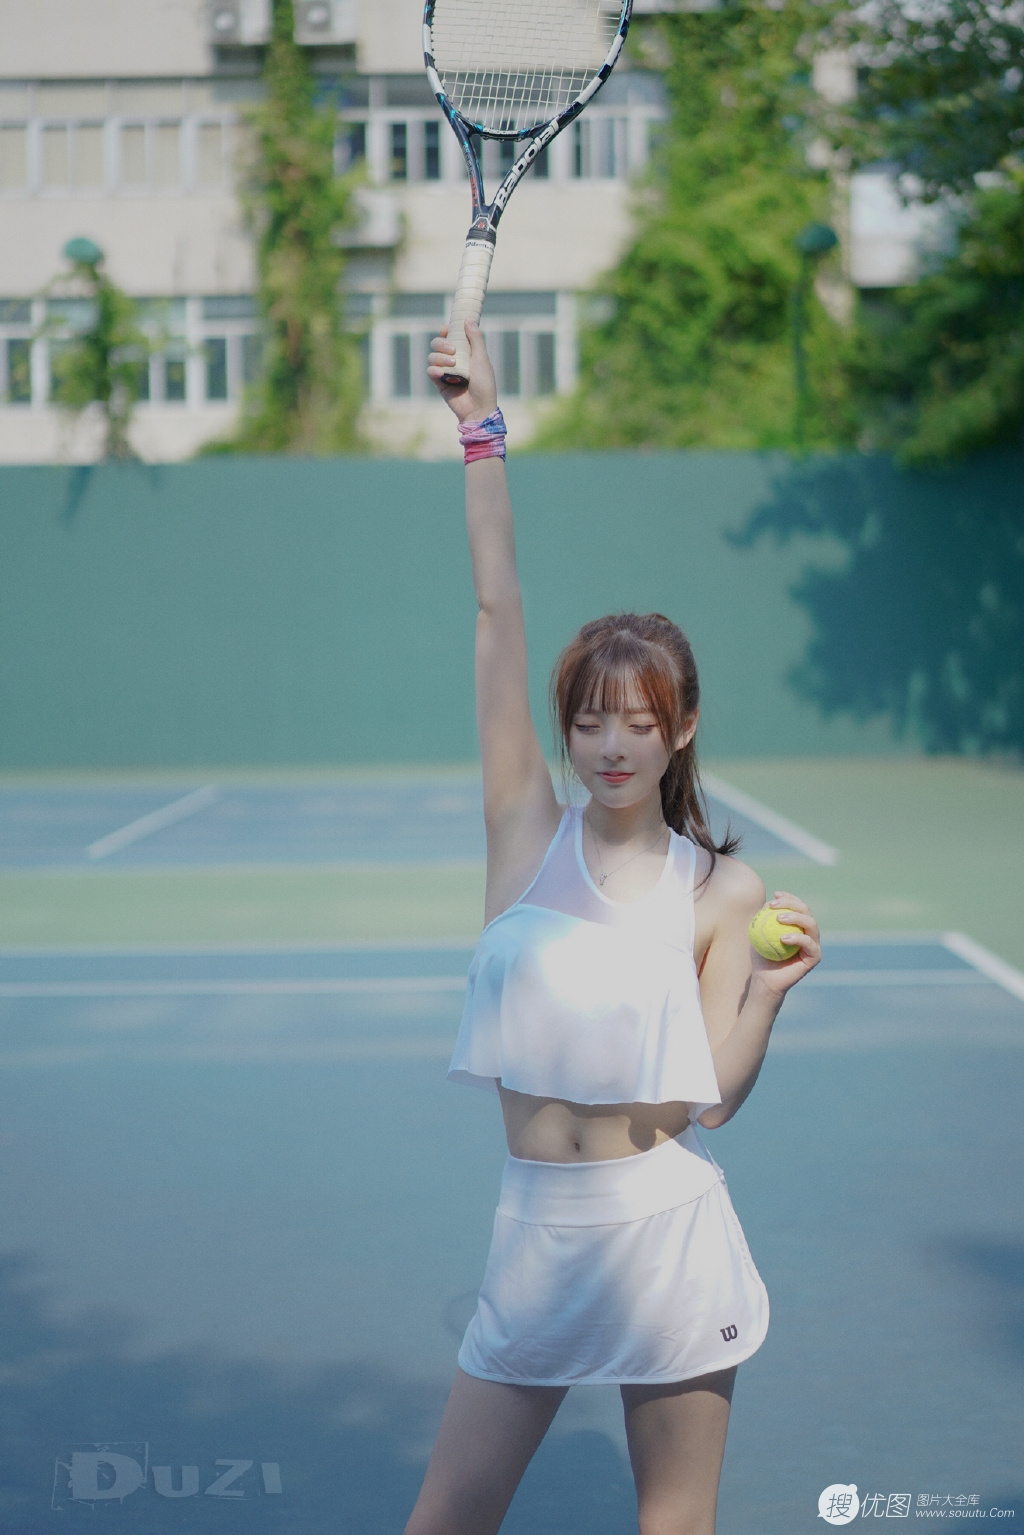 全白运动装短裙美女夏木颖网球场打球尽显小蛮腰写真图片套图6